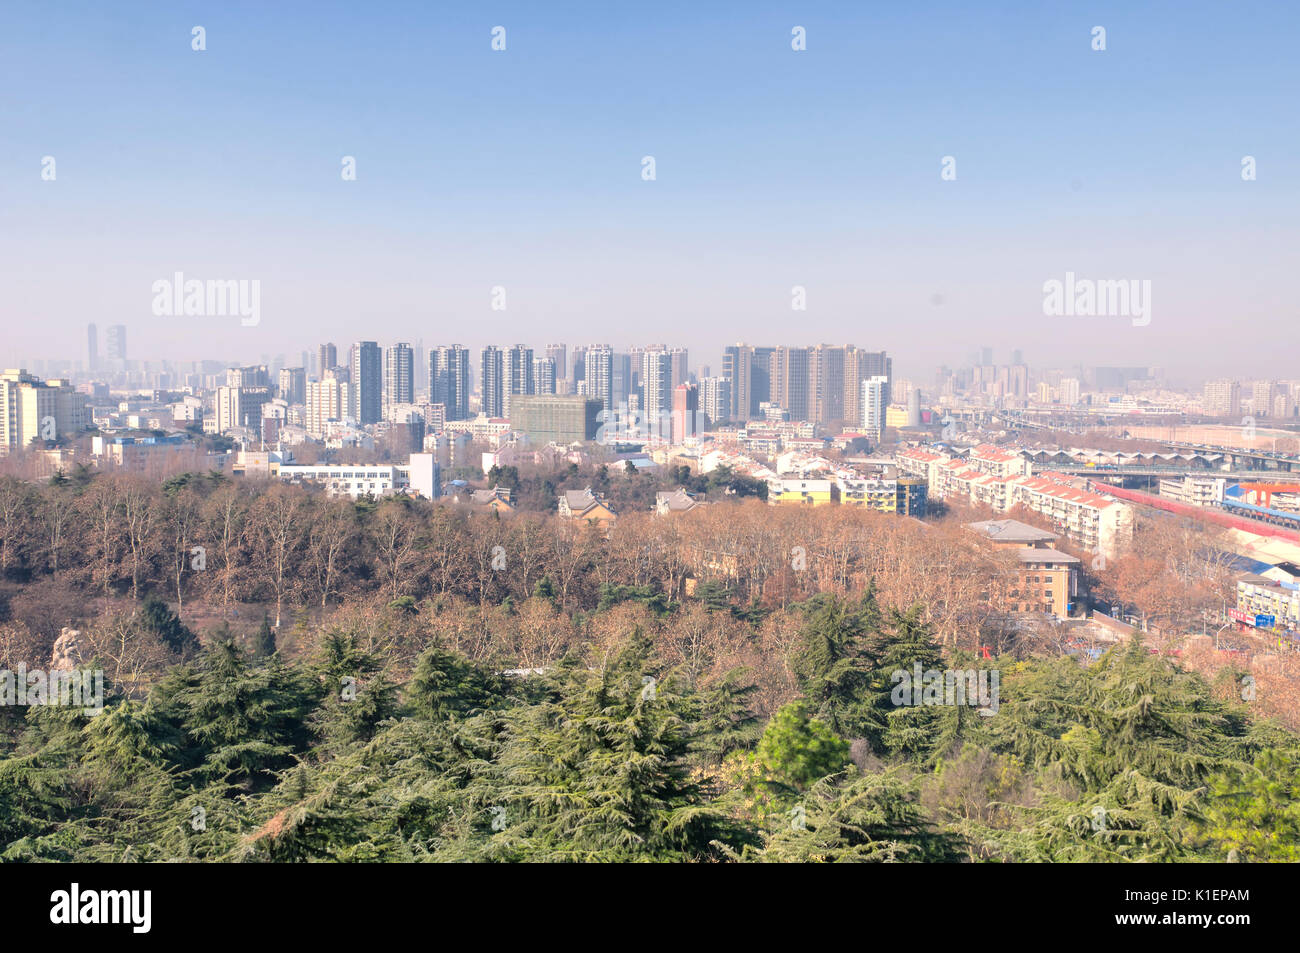 The city of Nanjing China seen from Yuhuatai Park in Jiangsu province. Stock Photo